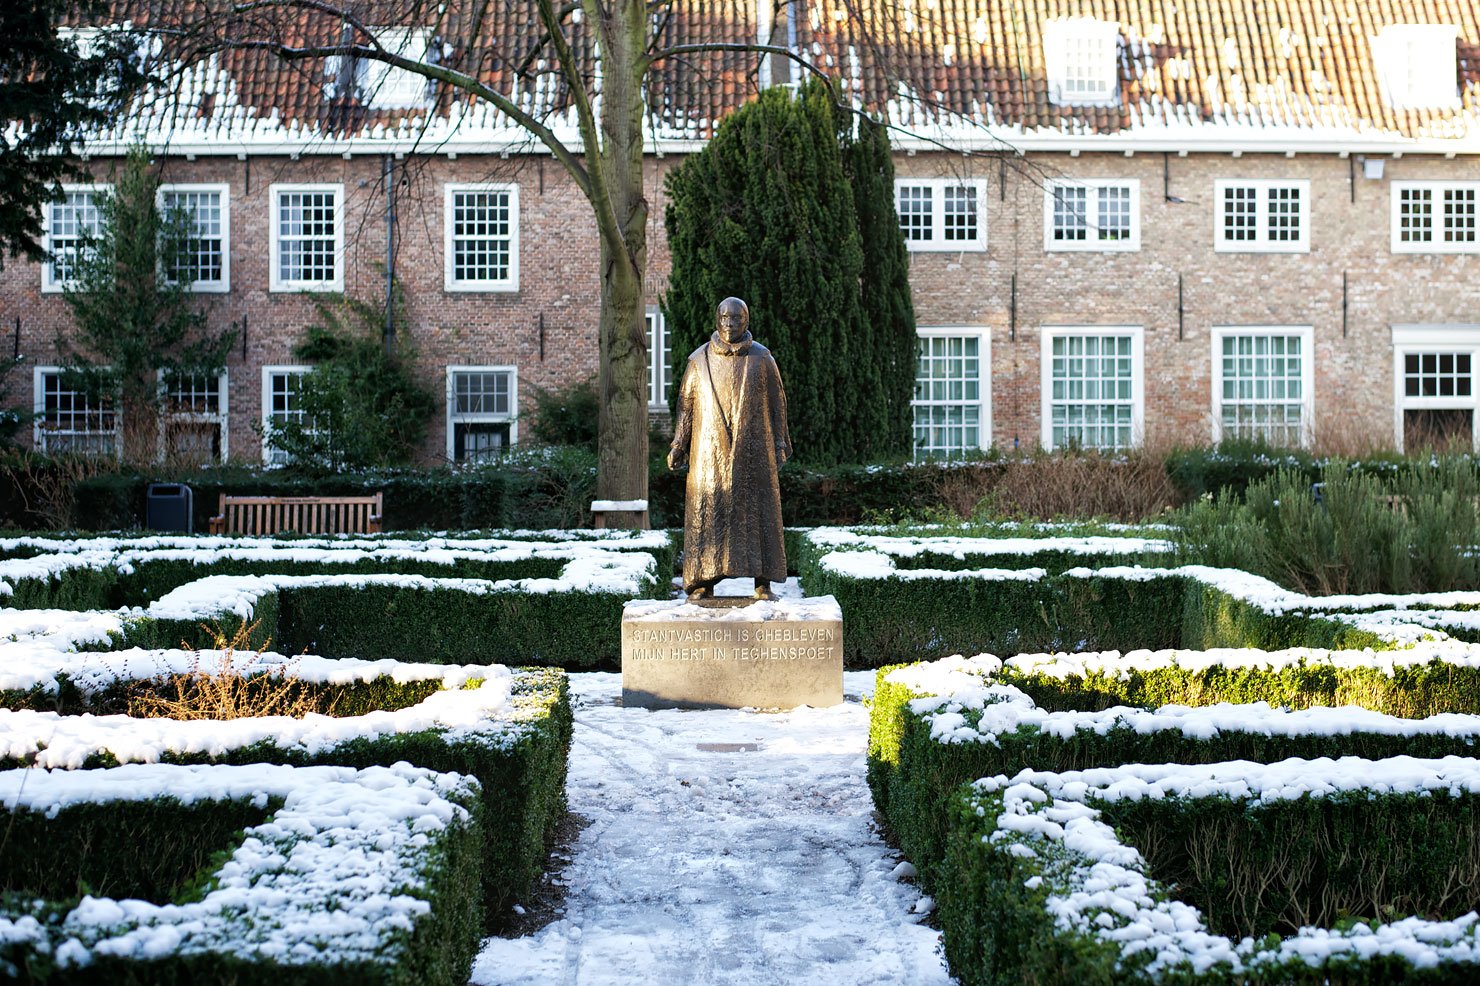 Statue of William of Orange (Willem van Oranje) at the garden of museum Prinsenhof in Delft